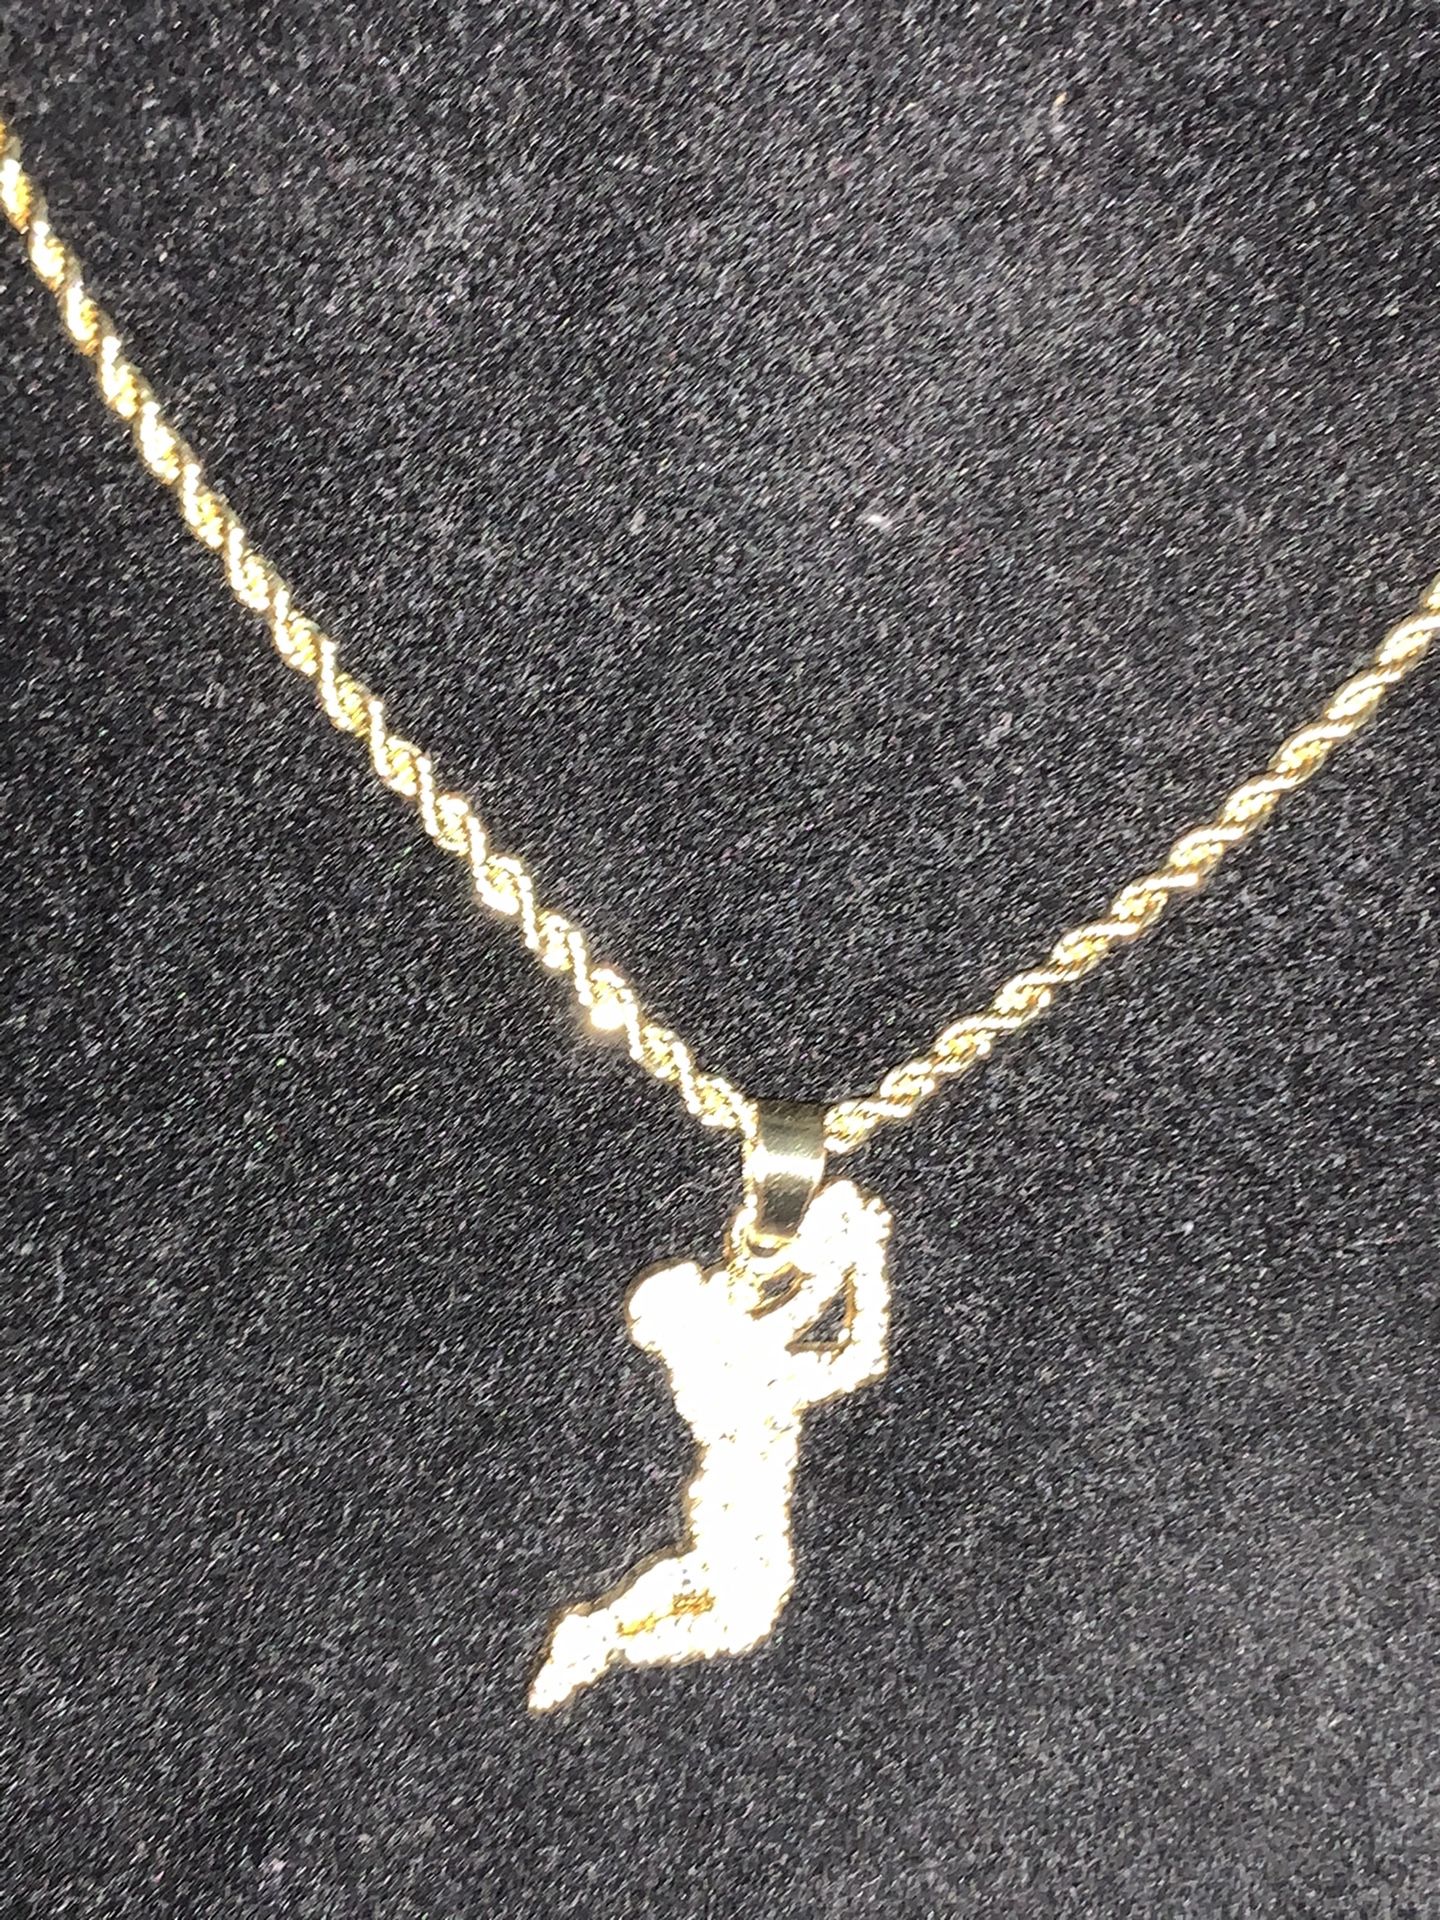 Pendant “Dunk Man” Symbol Necklace Charm (Please Read Description)